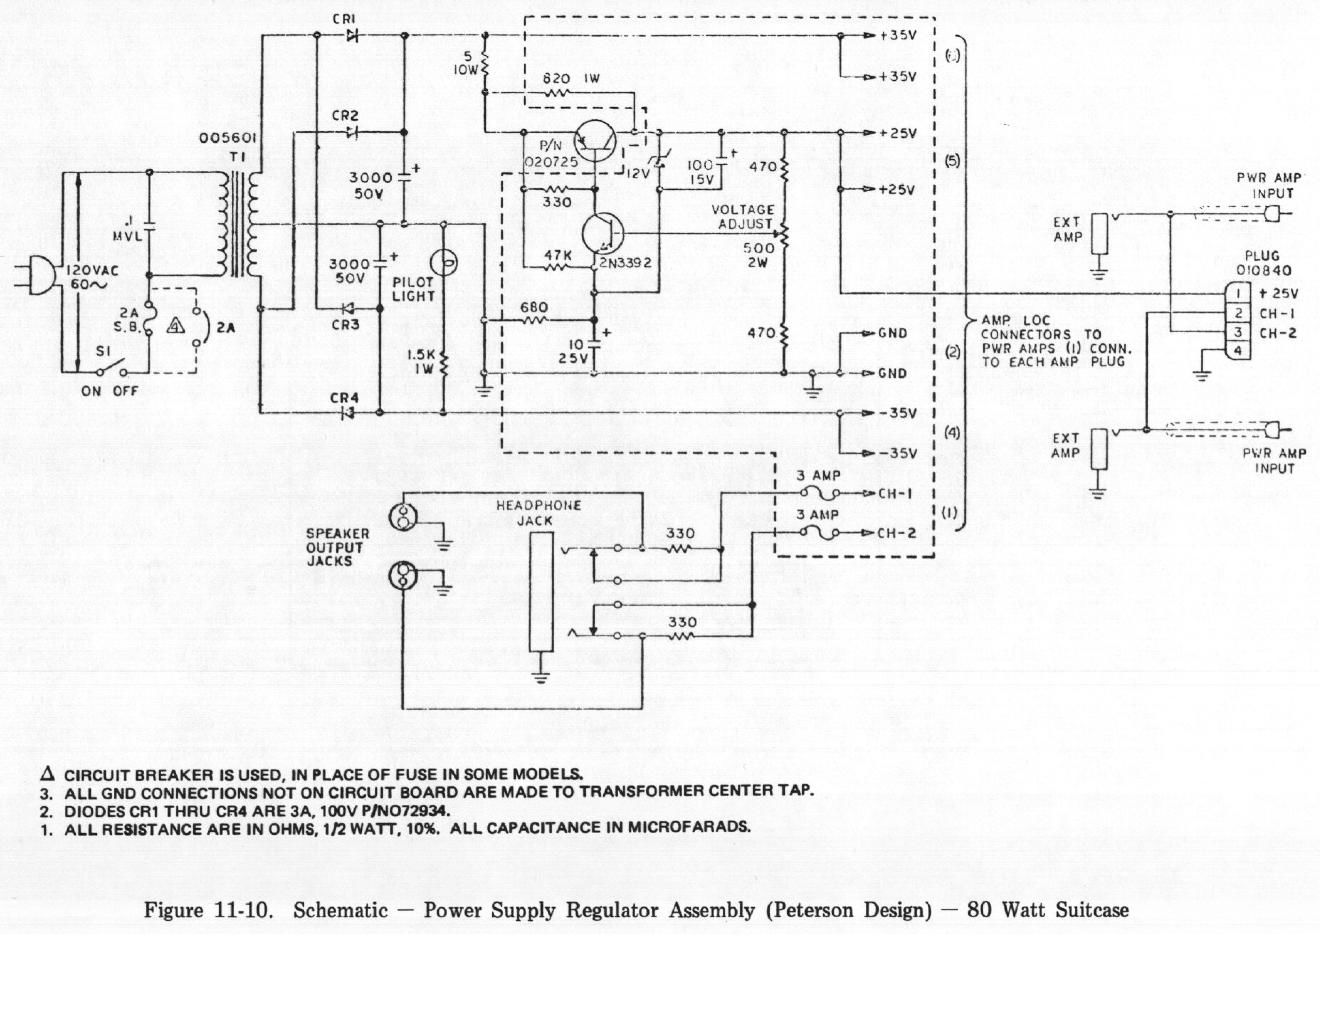 rhodes 80w suitcase power supply schematic